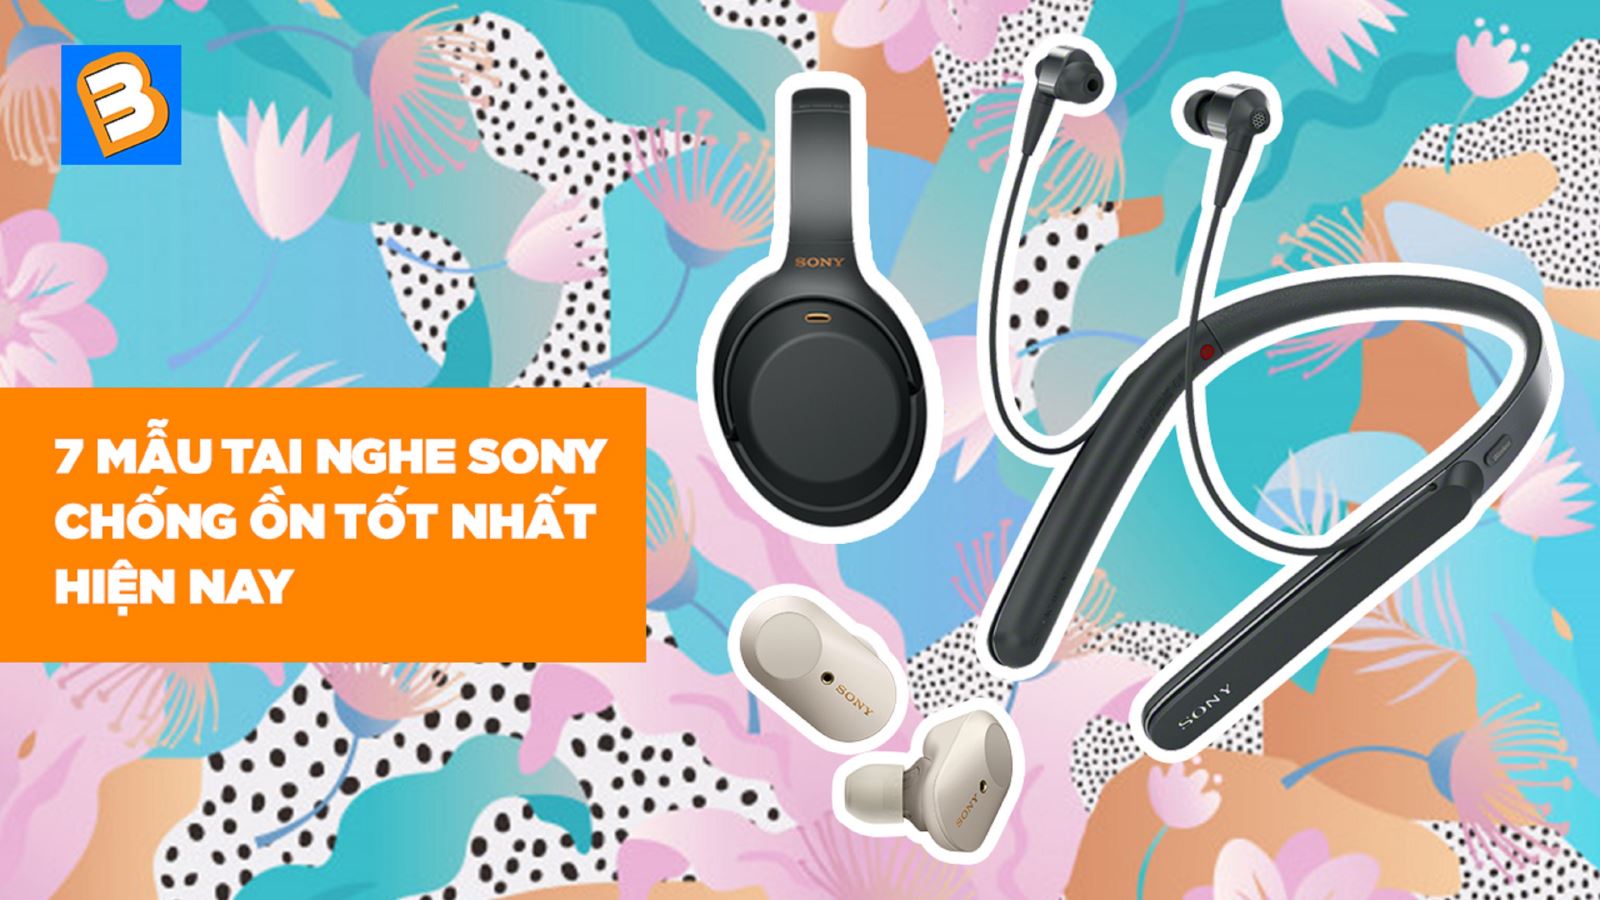 7 mẫu tai nghe Sony chống ồn tốt nhất hiện nay